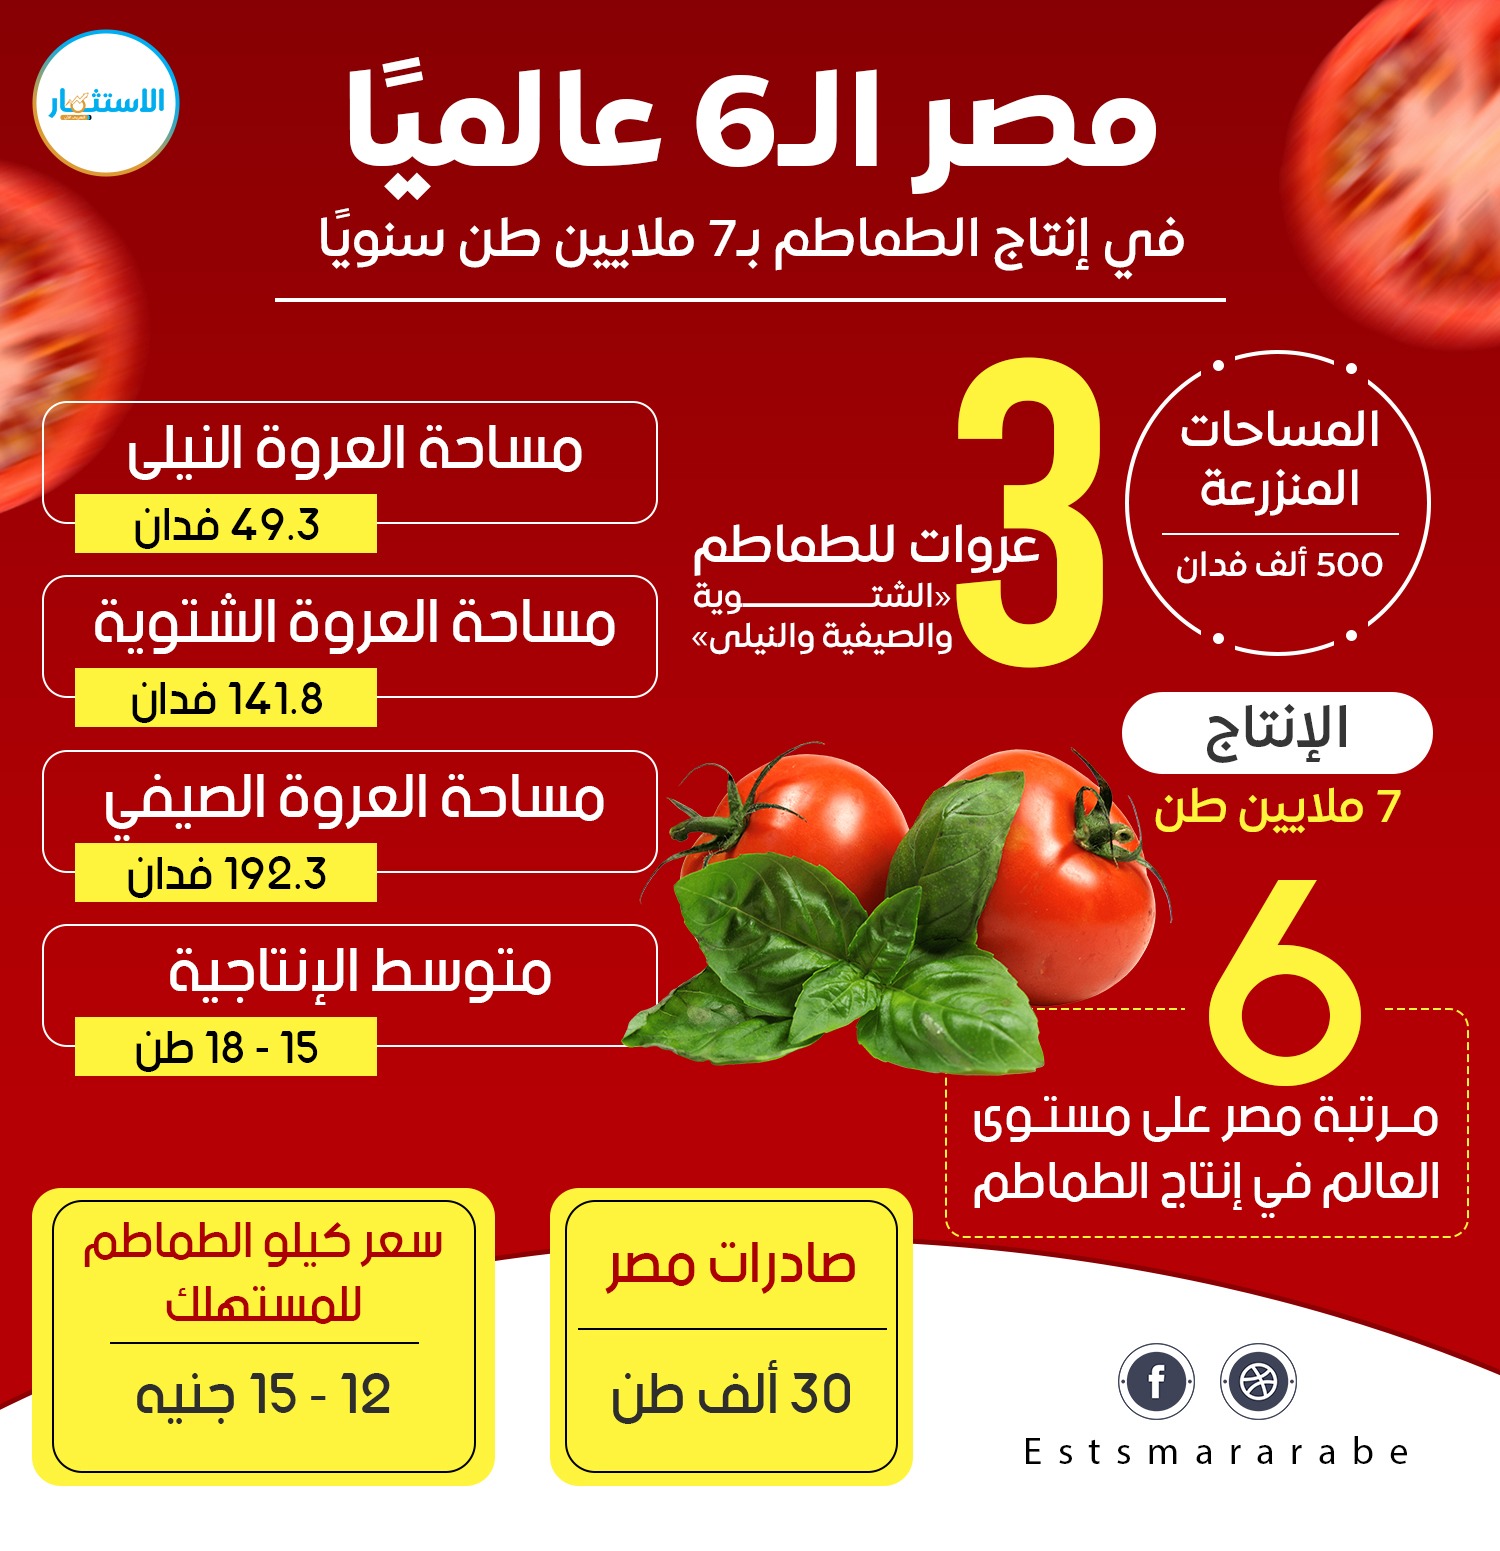 إنفوجرافيك|| مصر الـ6 عالميًا في إنتاج الطماطم بـ7 ملايين طن سنويًا